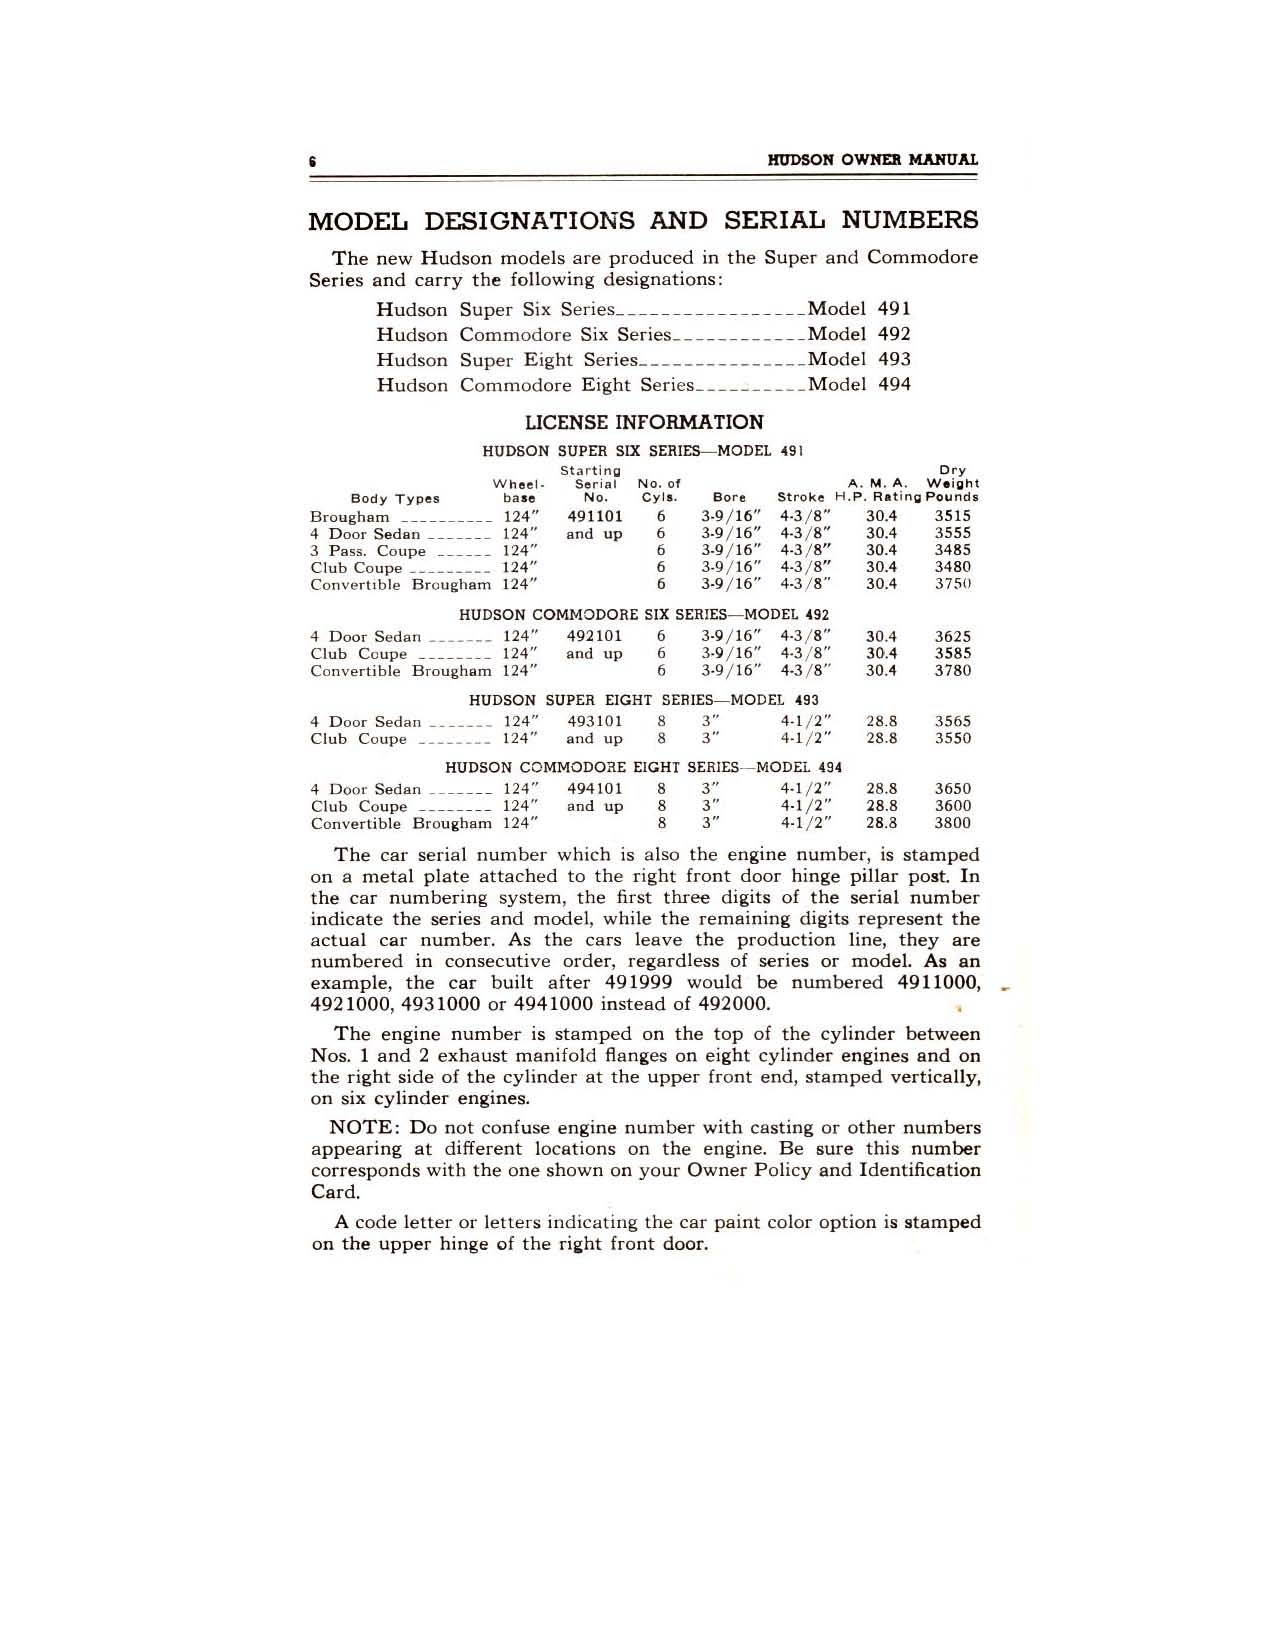 1949 Hudson Owners Manual-08